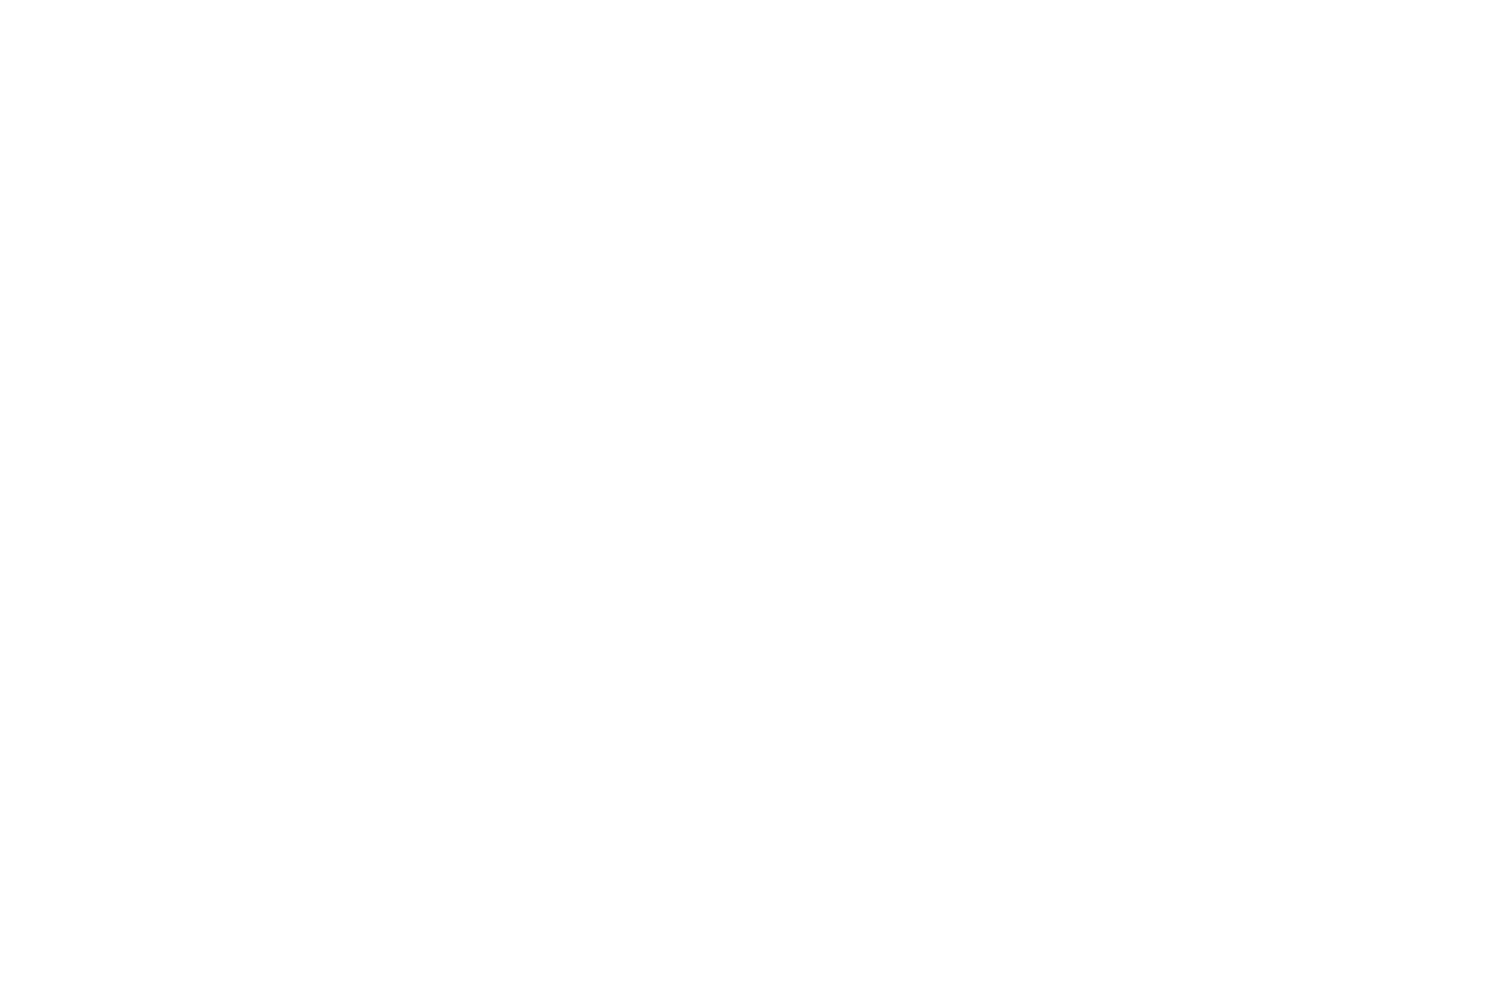 33A